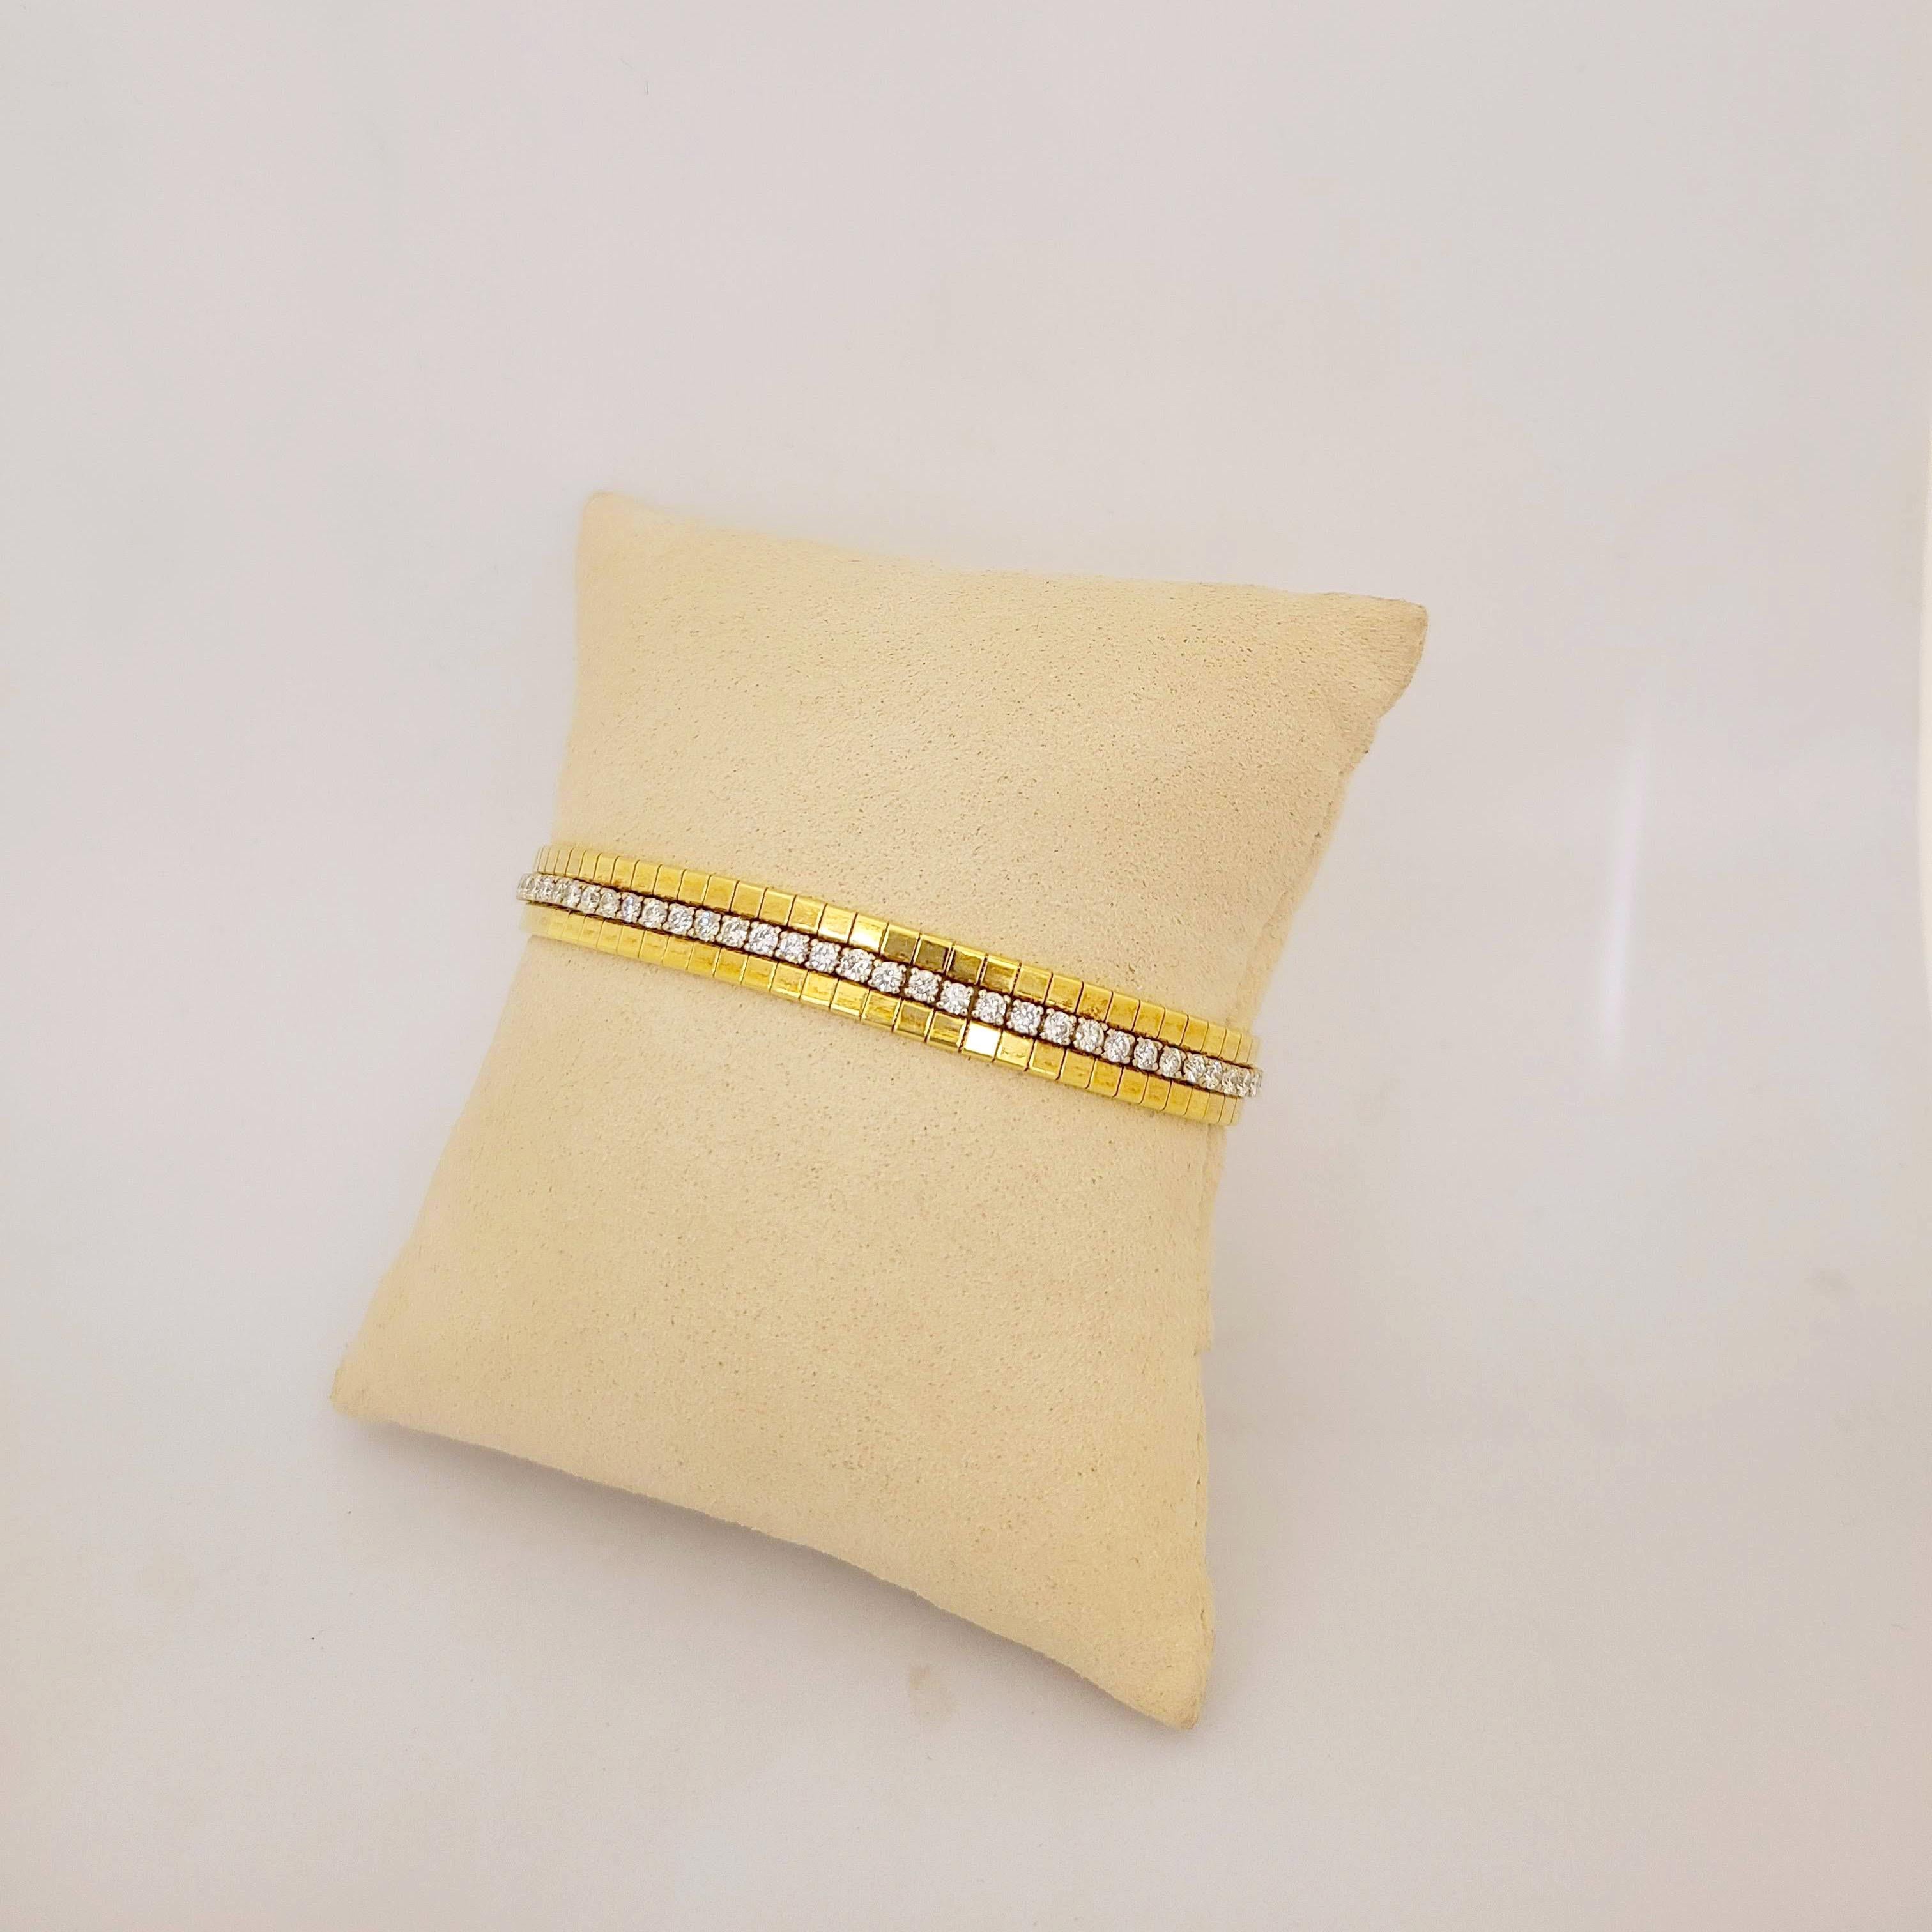 bracelet en or 18 carats. Ce bracelet est orné d'une seule rangée de diamants brillants ronds en or blanc à quatre griffes, au centre. Les 2 rangs extérieurs sont constitués de sections carrées en or jaune.
Le bracelet mesure 7